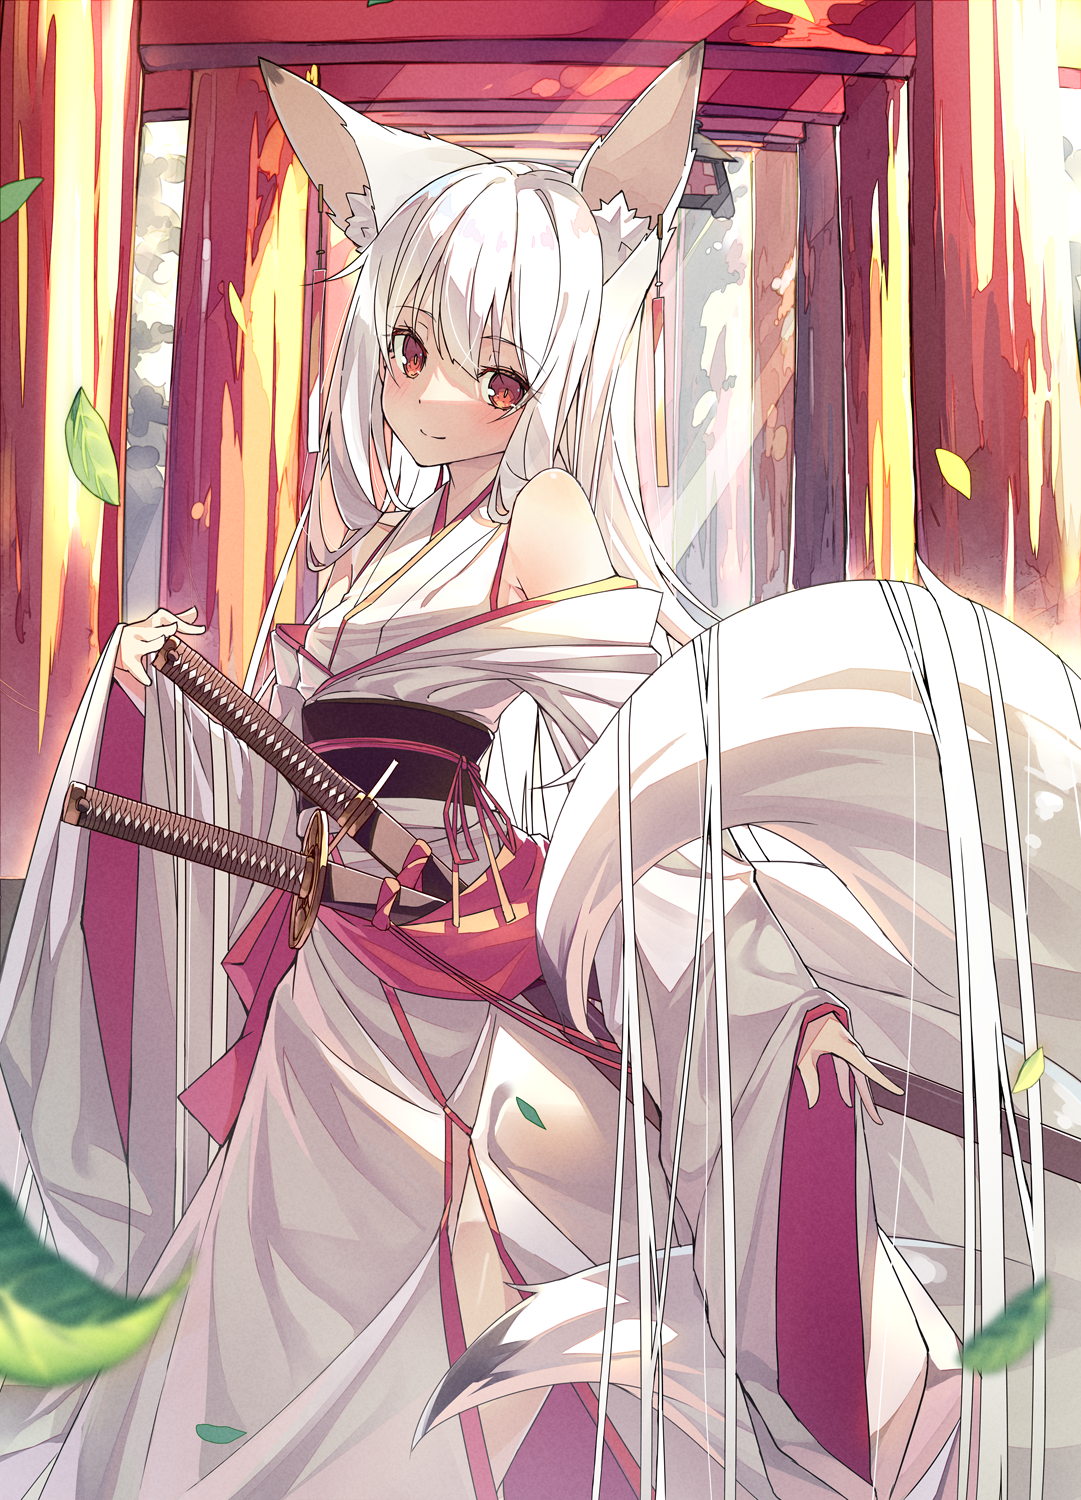 Anime 1081x1500 anime girls fox ears white hair fox girl sword red eyes